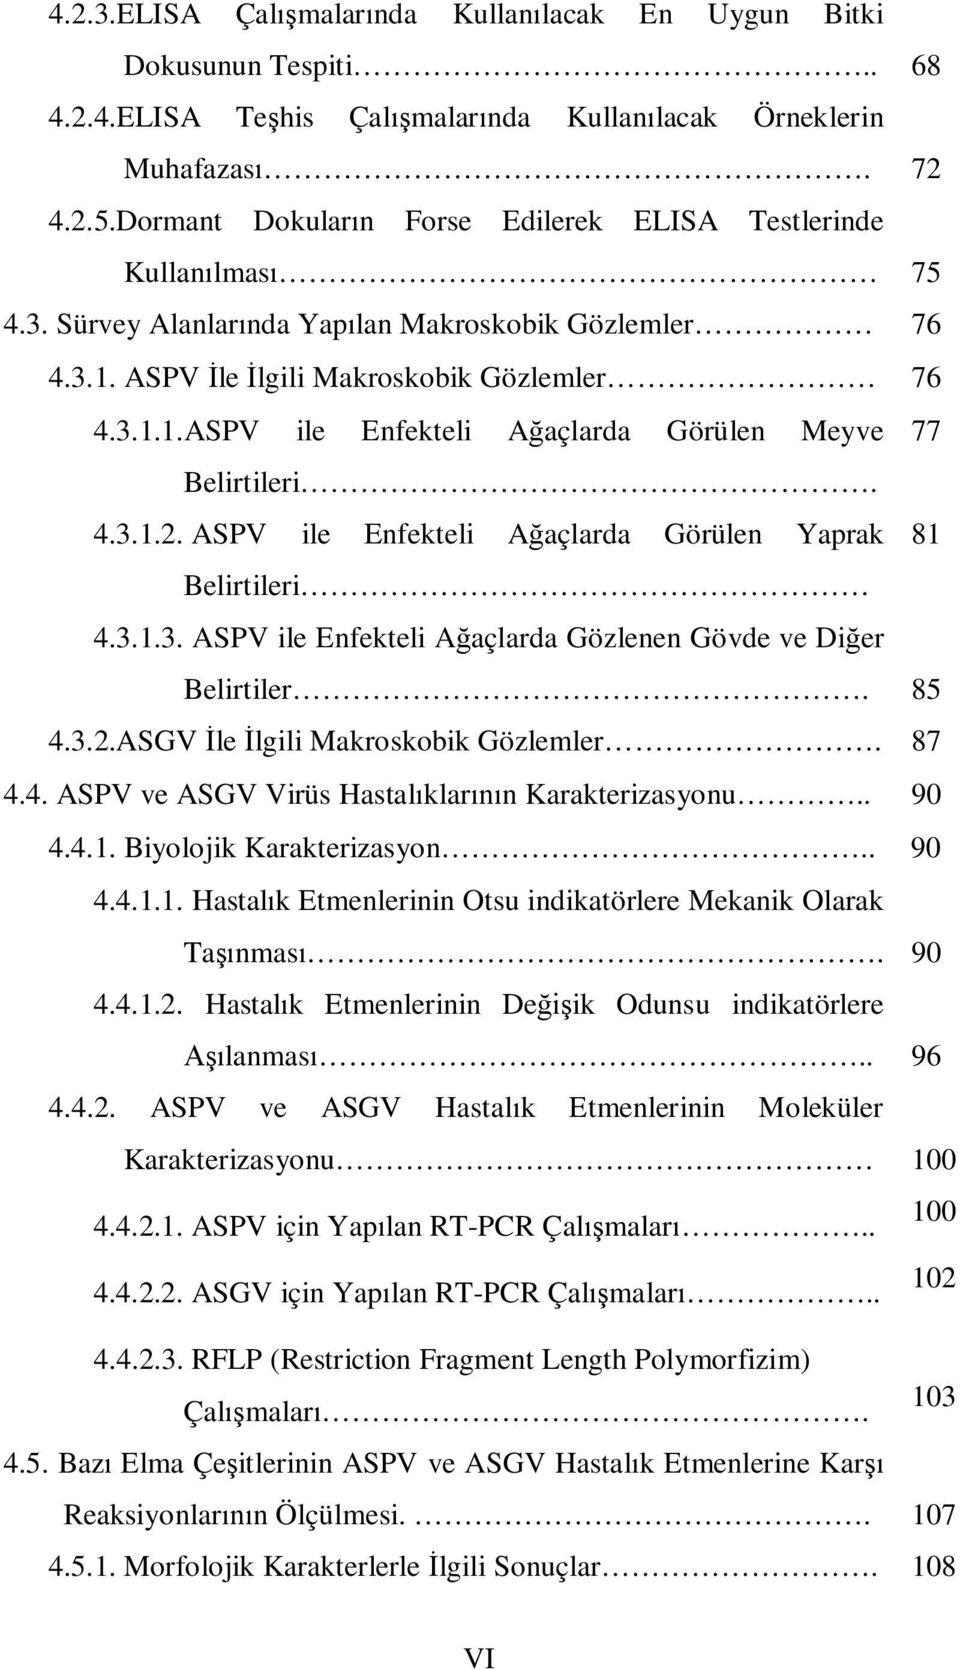 4.3.1.2. ASPV ile Enfekteli Ağaçlarda Görülen Yaprak 81 Belirtileri 4.3.1.3. ASPV ile Enfekteli Ağaçlarda Gözlenen Gövde ve Diğer Belirtiler. 85 4.3.2.ASGV İle İlgili Makroskobik Gözlemler. 87 4.4. ASPV ve ASGV Virüs Hastalıklarının Karakterizasyonu.